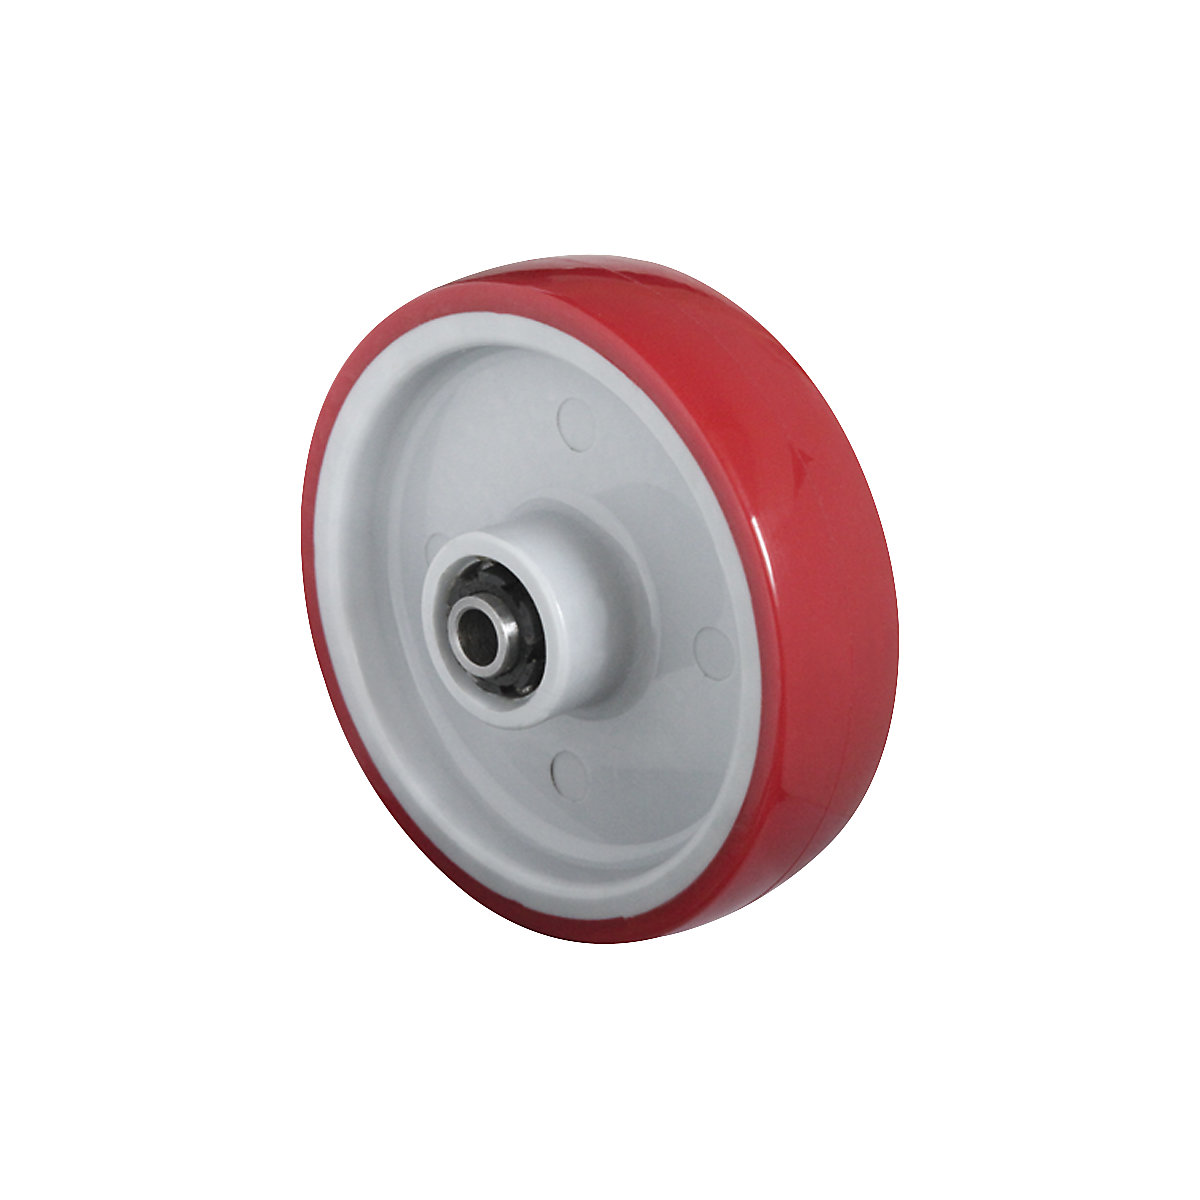 PU kotač, u crvenoj boji, na poliamidnom naplatku, valjkasti ležaj od nehrđajućeg čelika, od 2 kom., Ø x širina kotača 100 x 32 mm-3